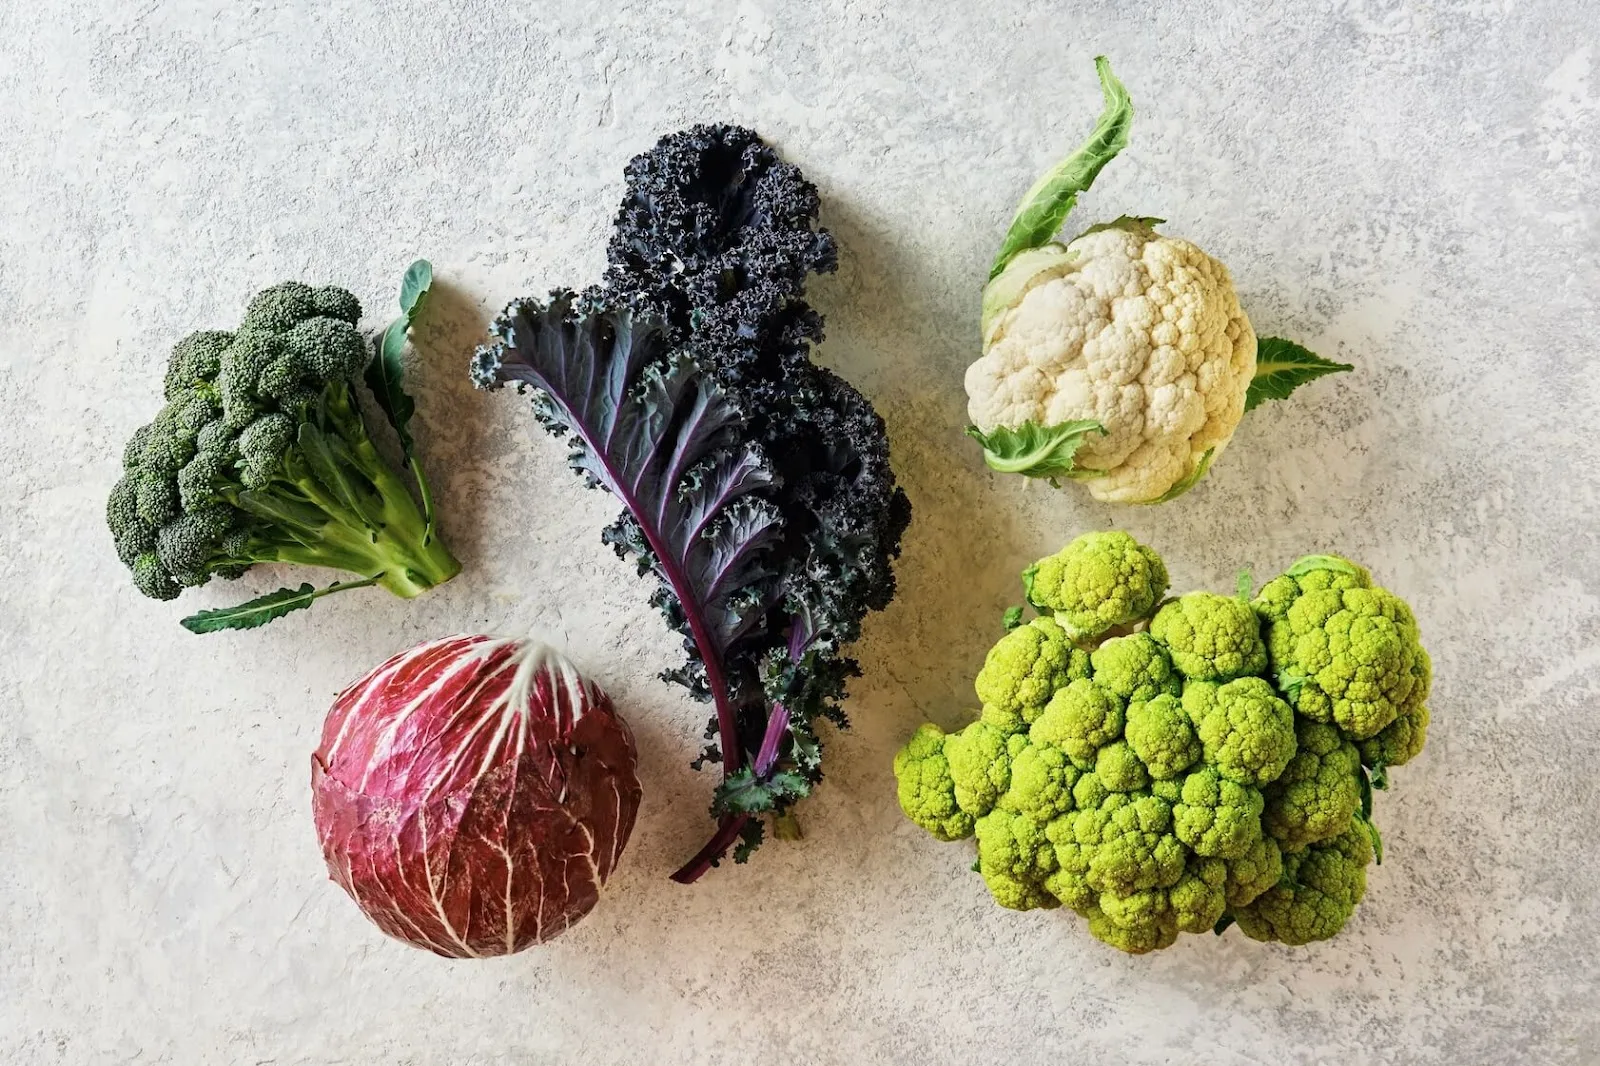 抗發炎食物與蔬菜 - 深綠色葉菜及十字花科蔬菜。